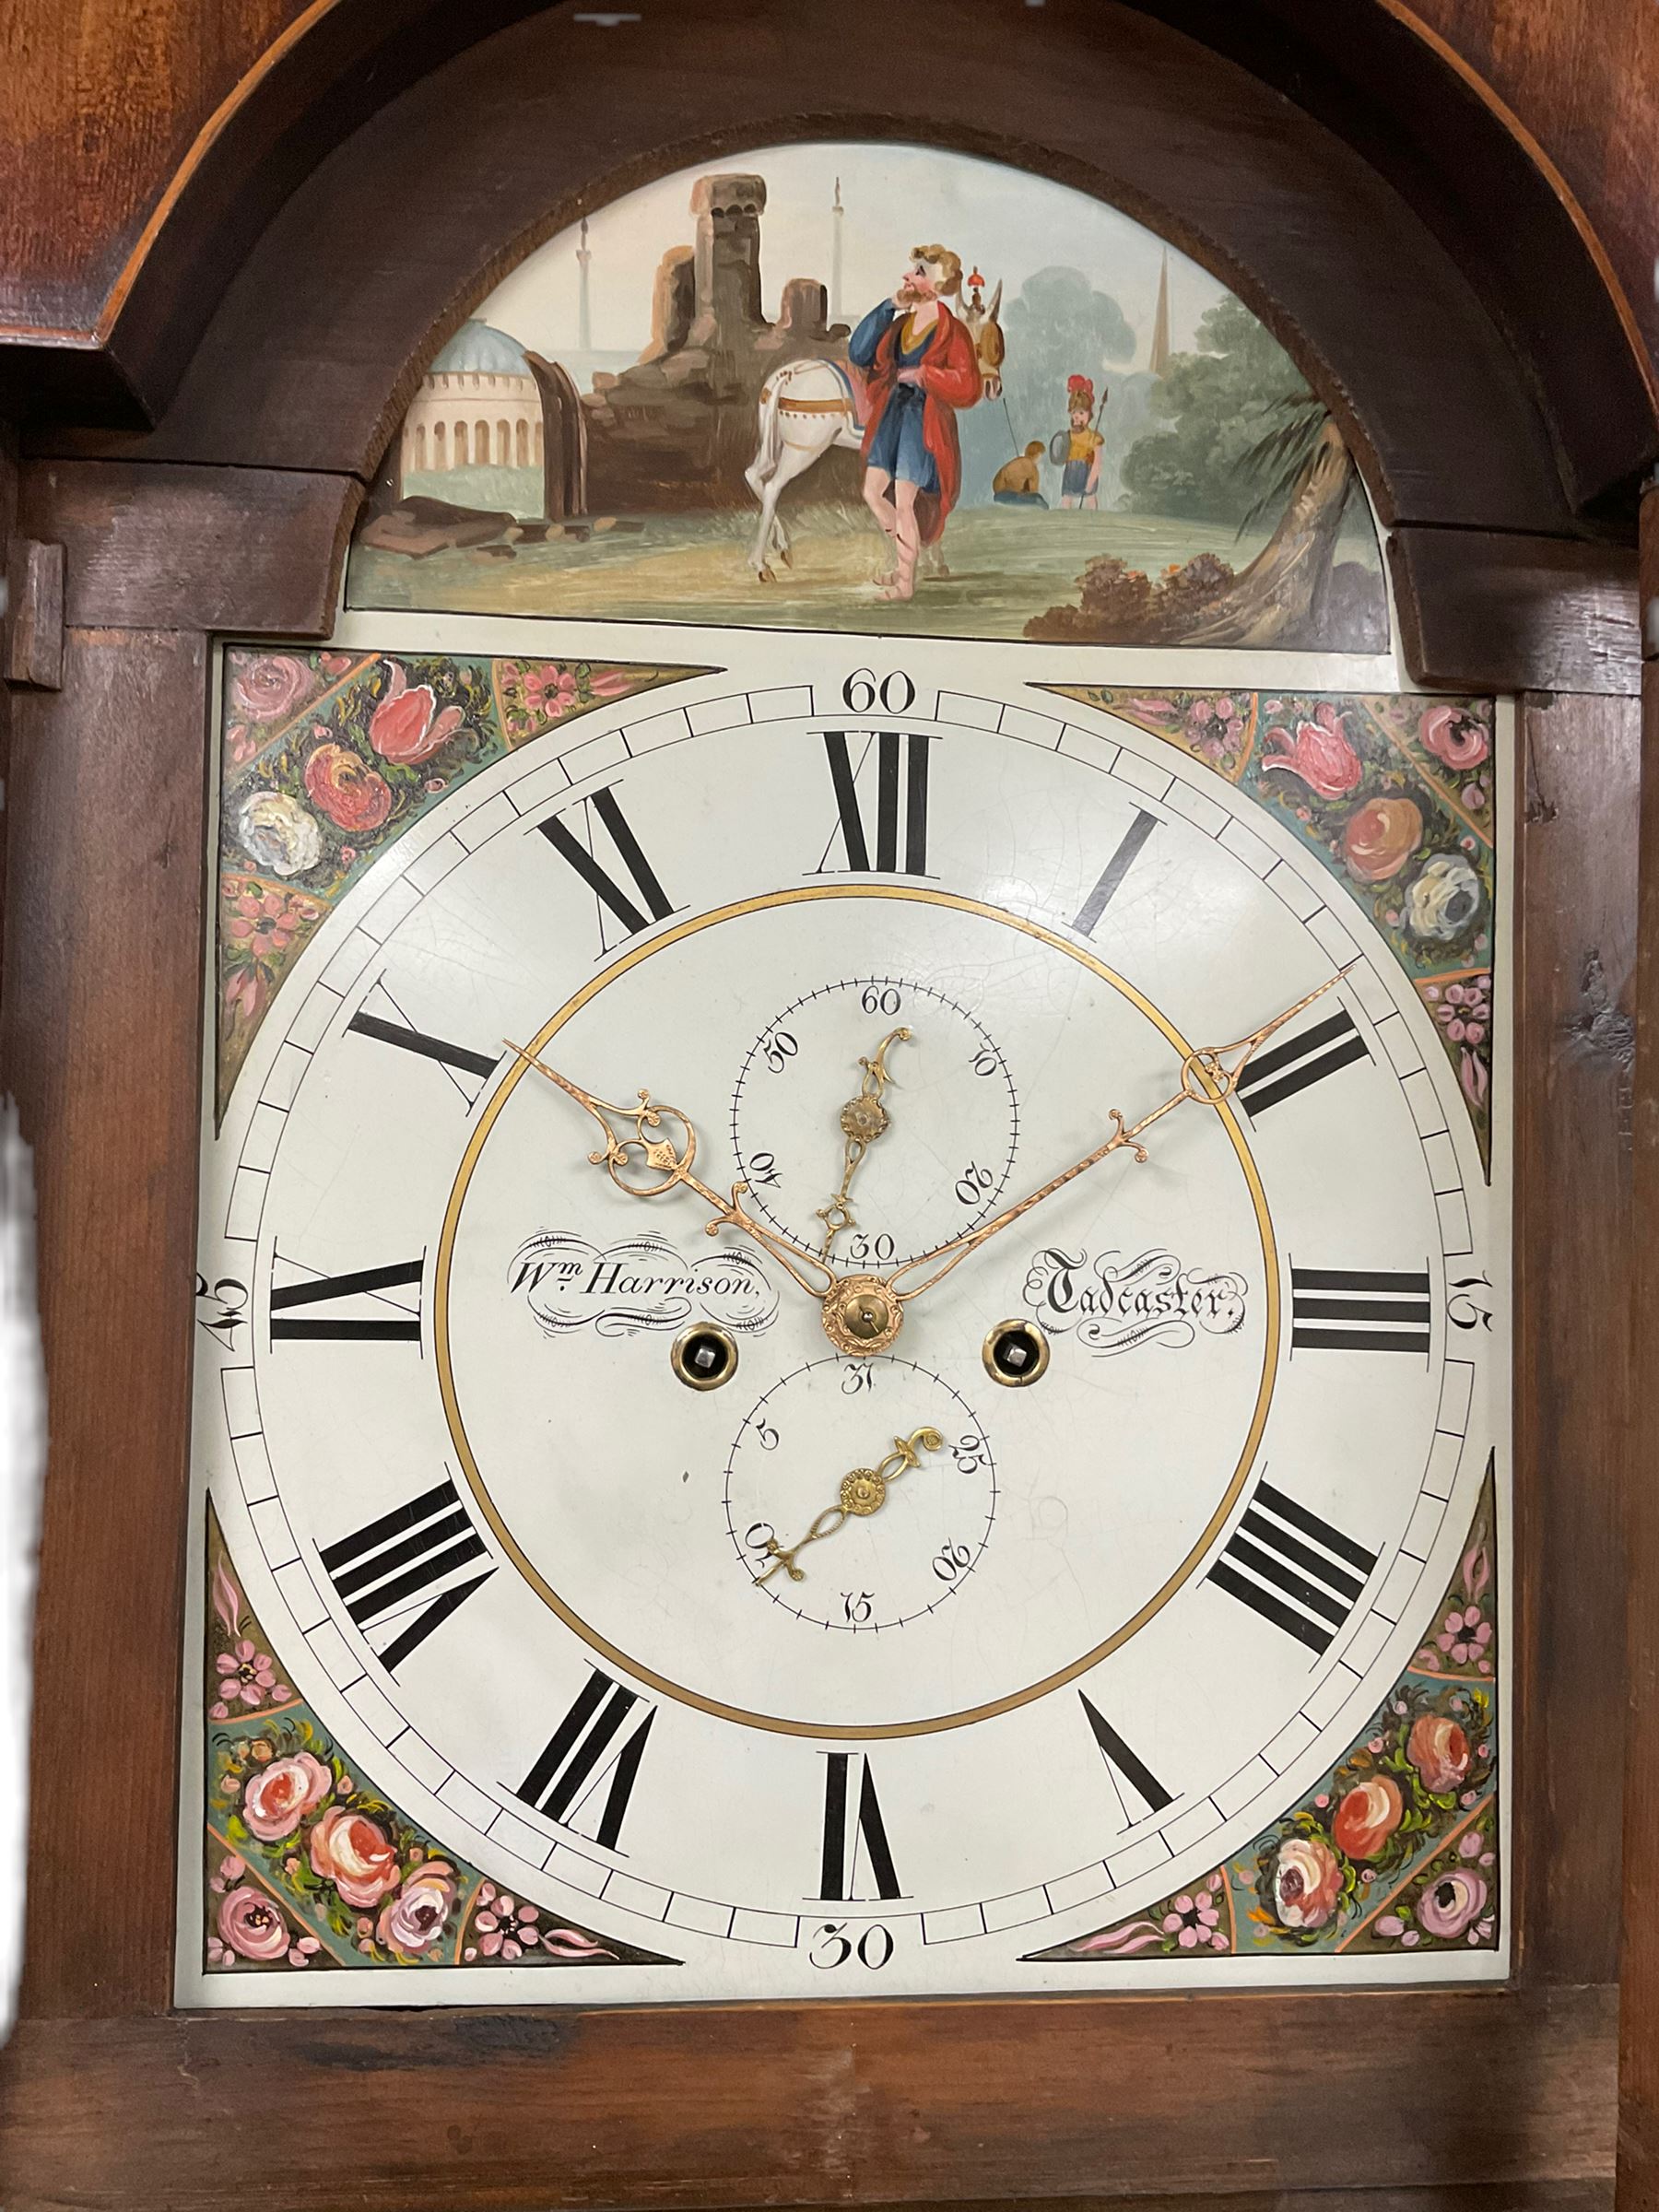 A mid-19th century oak and mahogany longcase clock by “ Wm Harrison, Tadcaster”, - Image 3 of 3